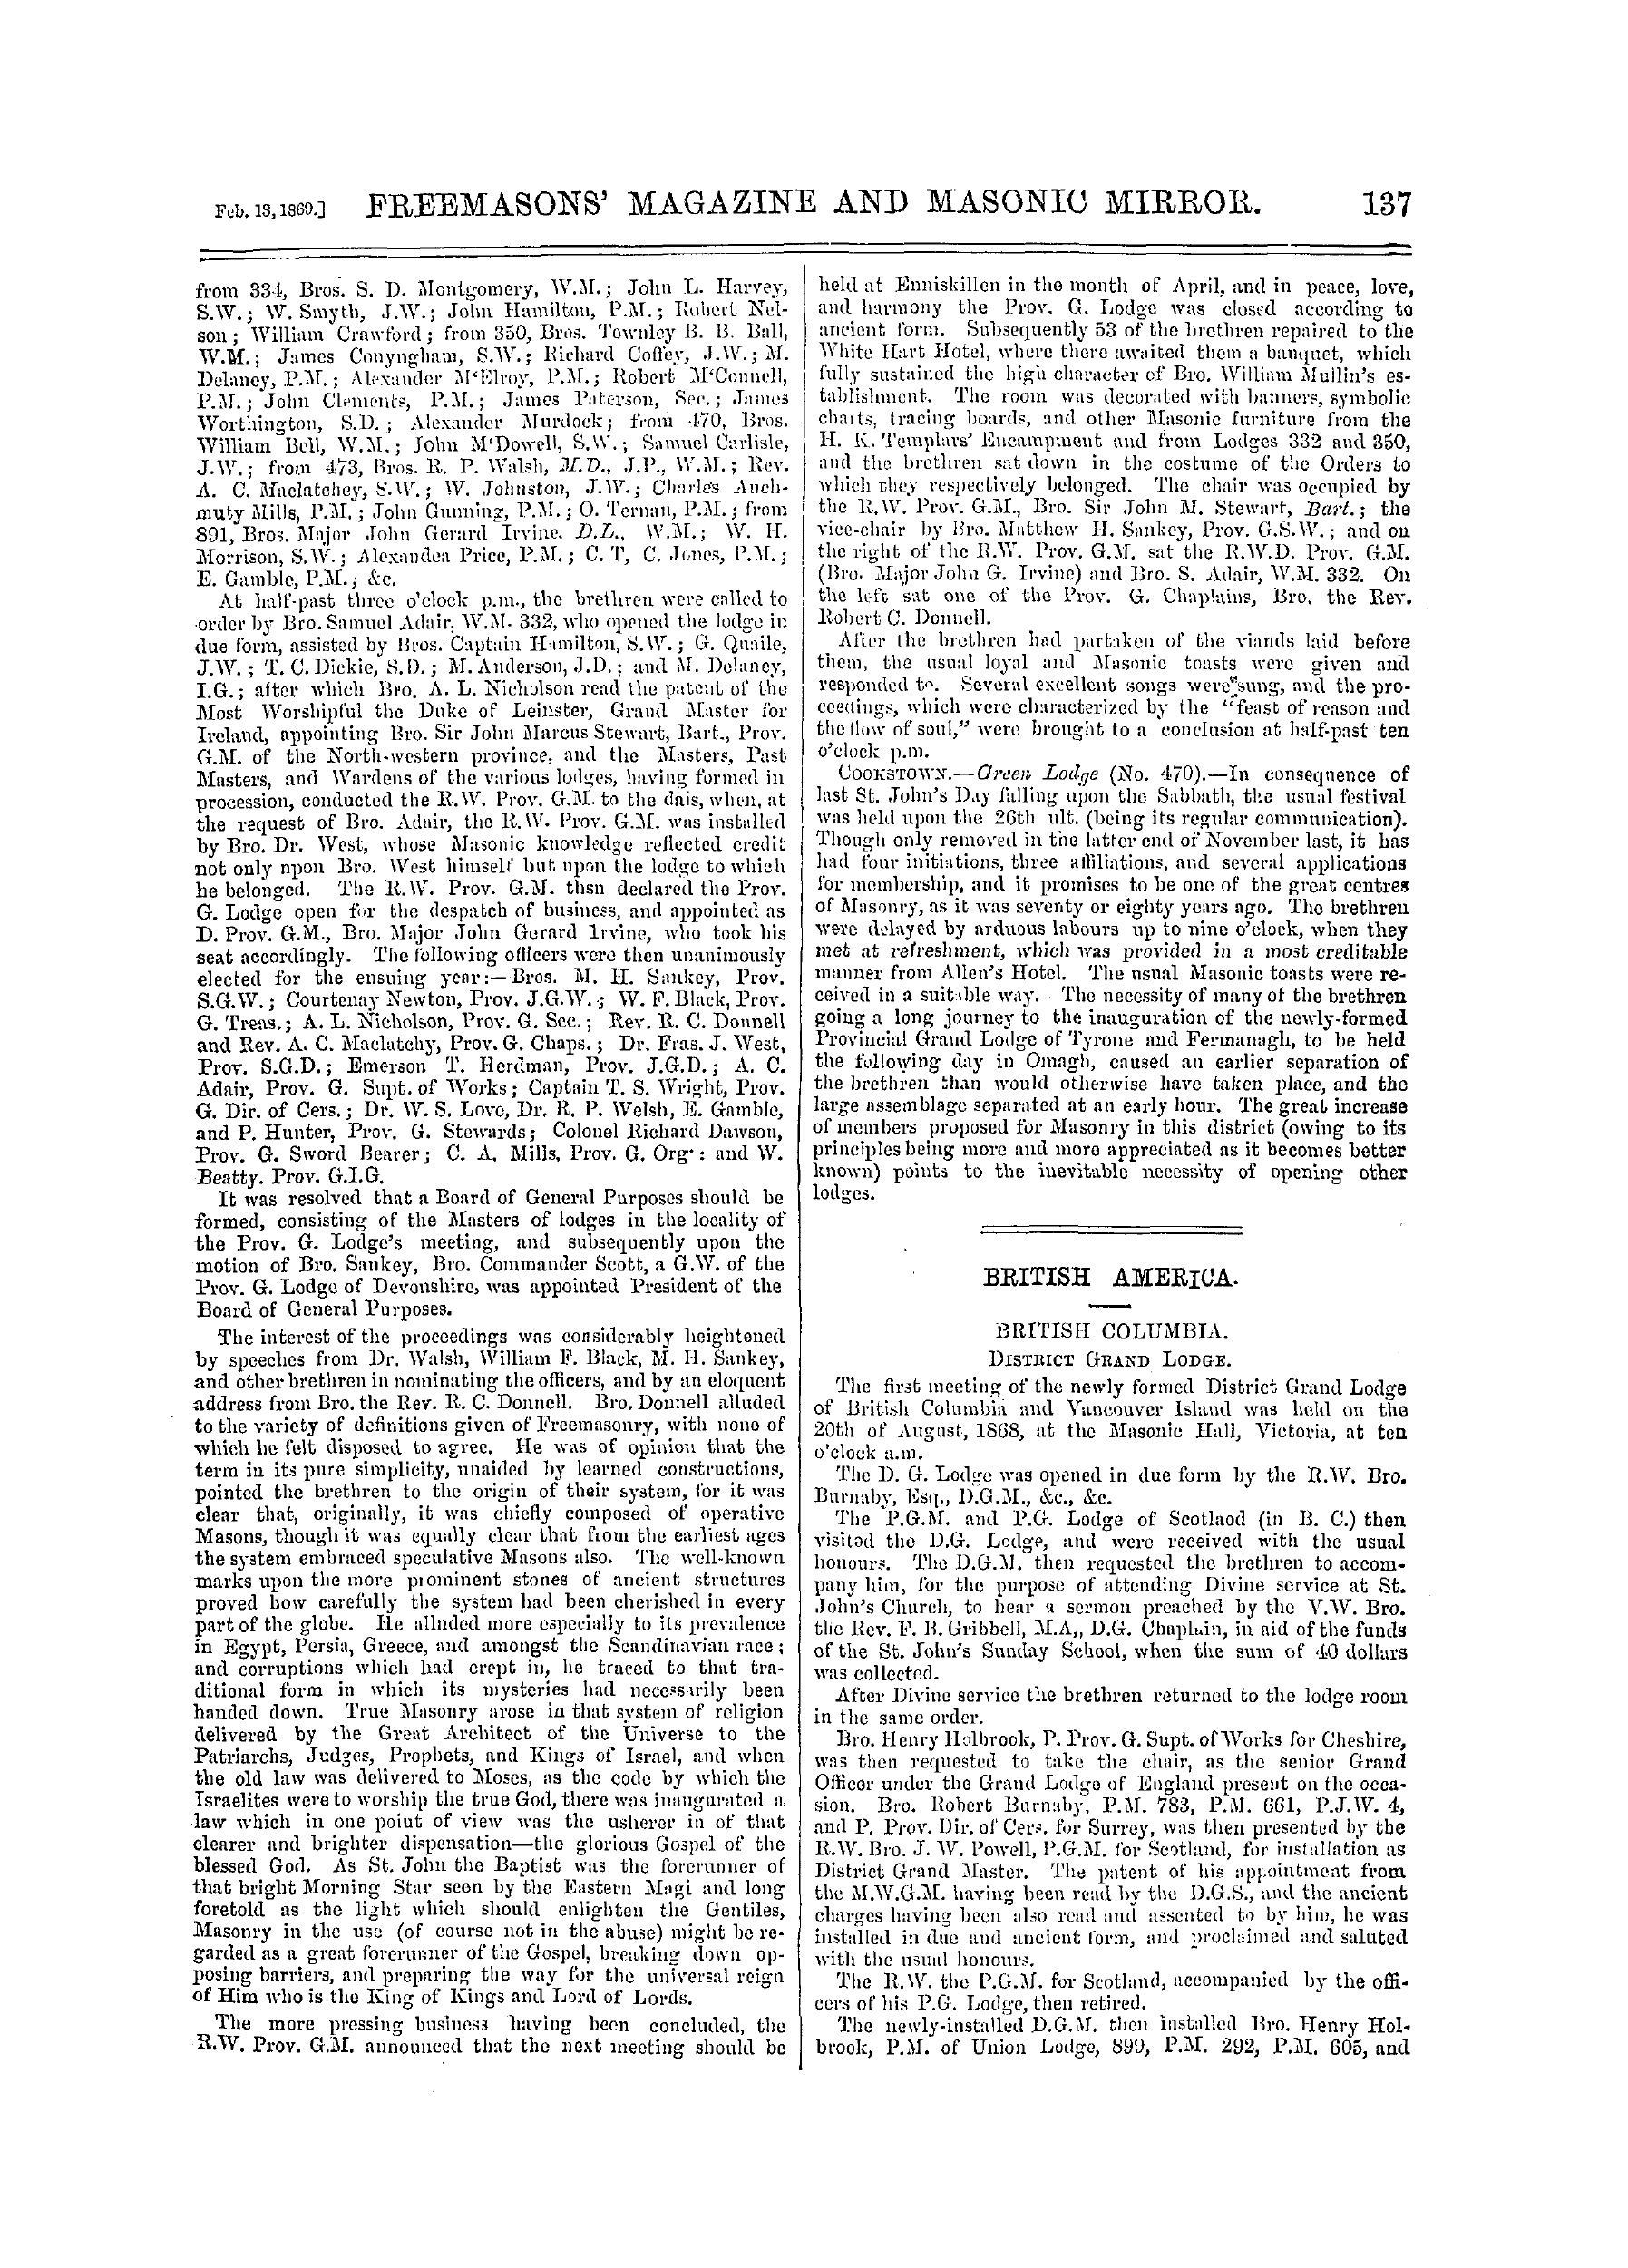 The Freemasons' Monthly Magazine: 1869-02-13 - Ireland.